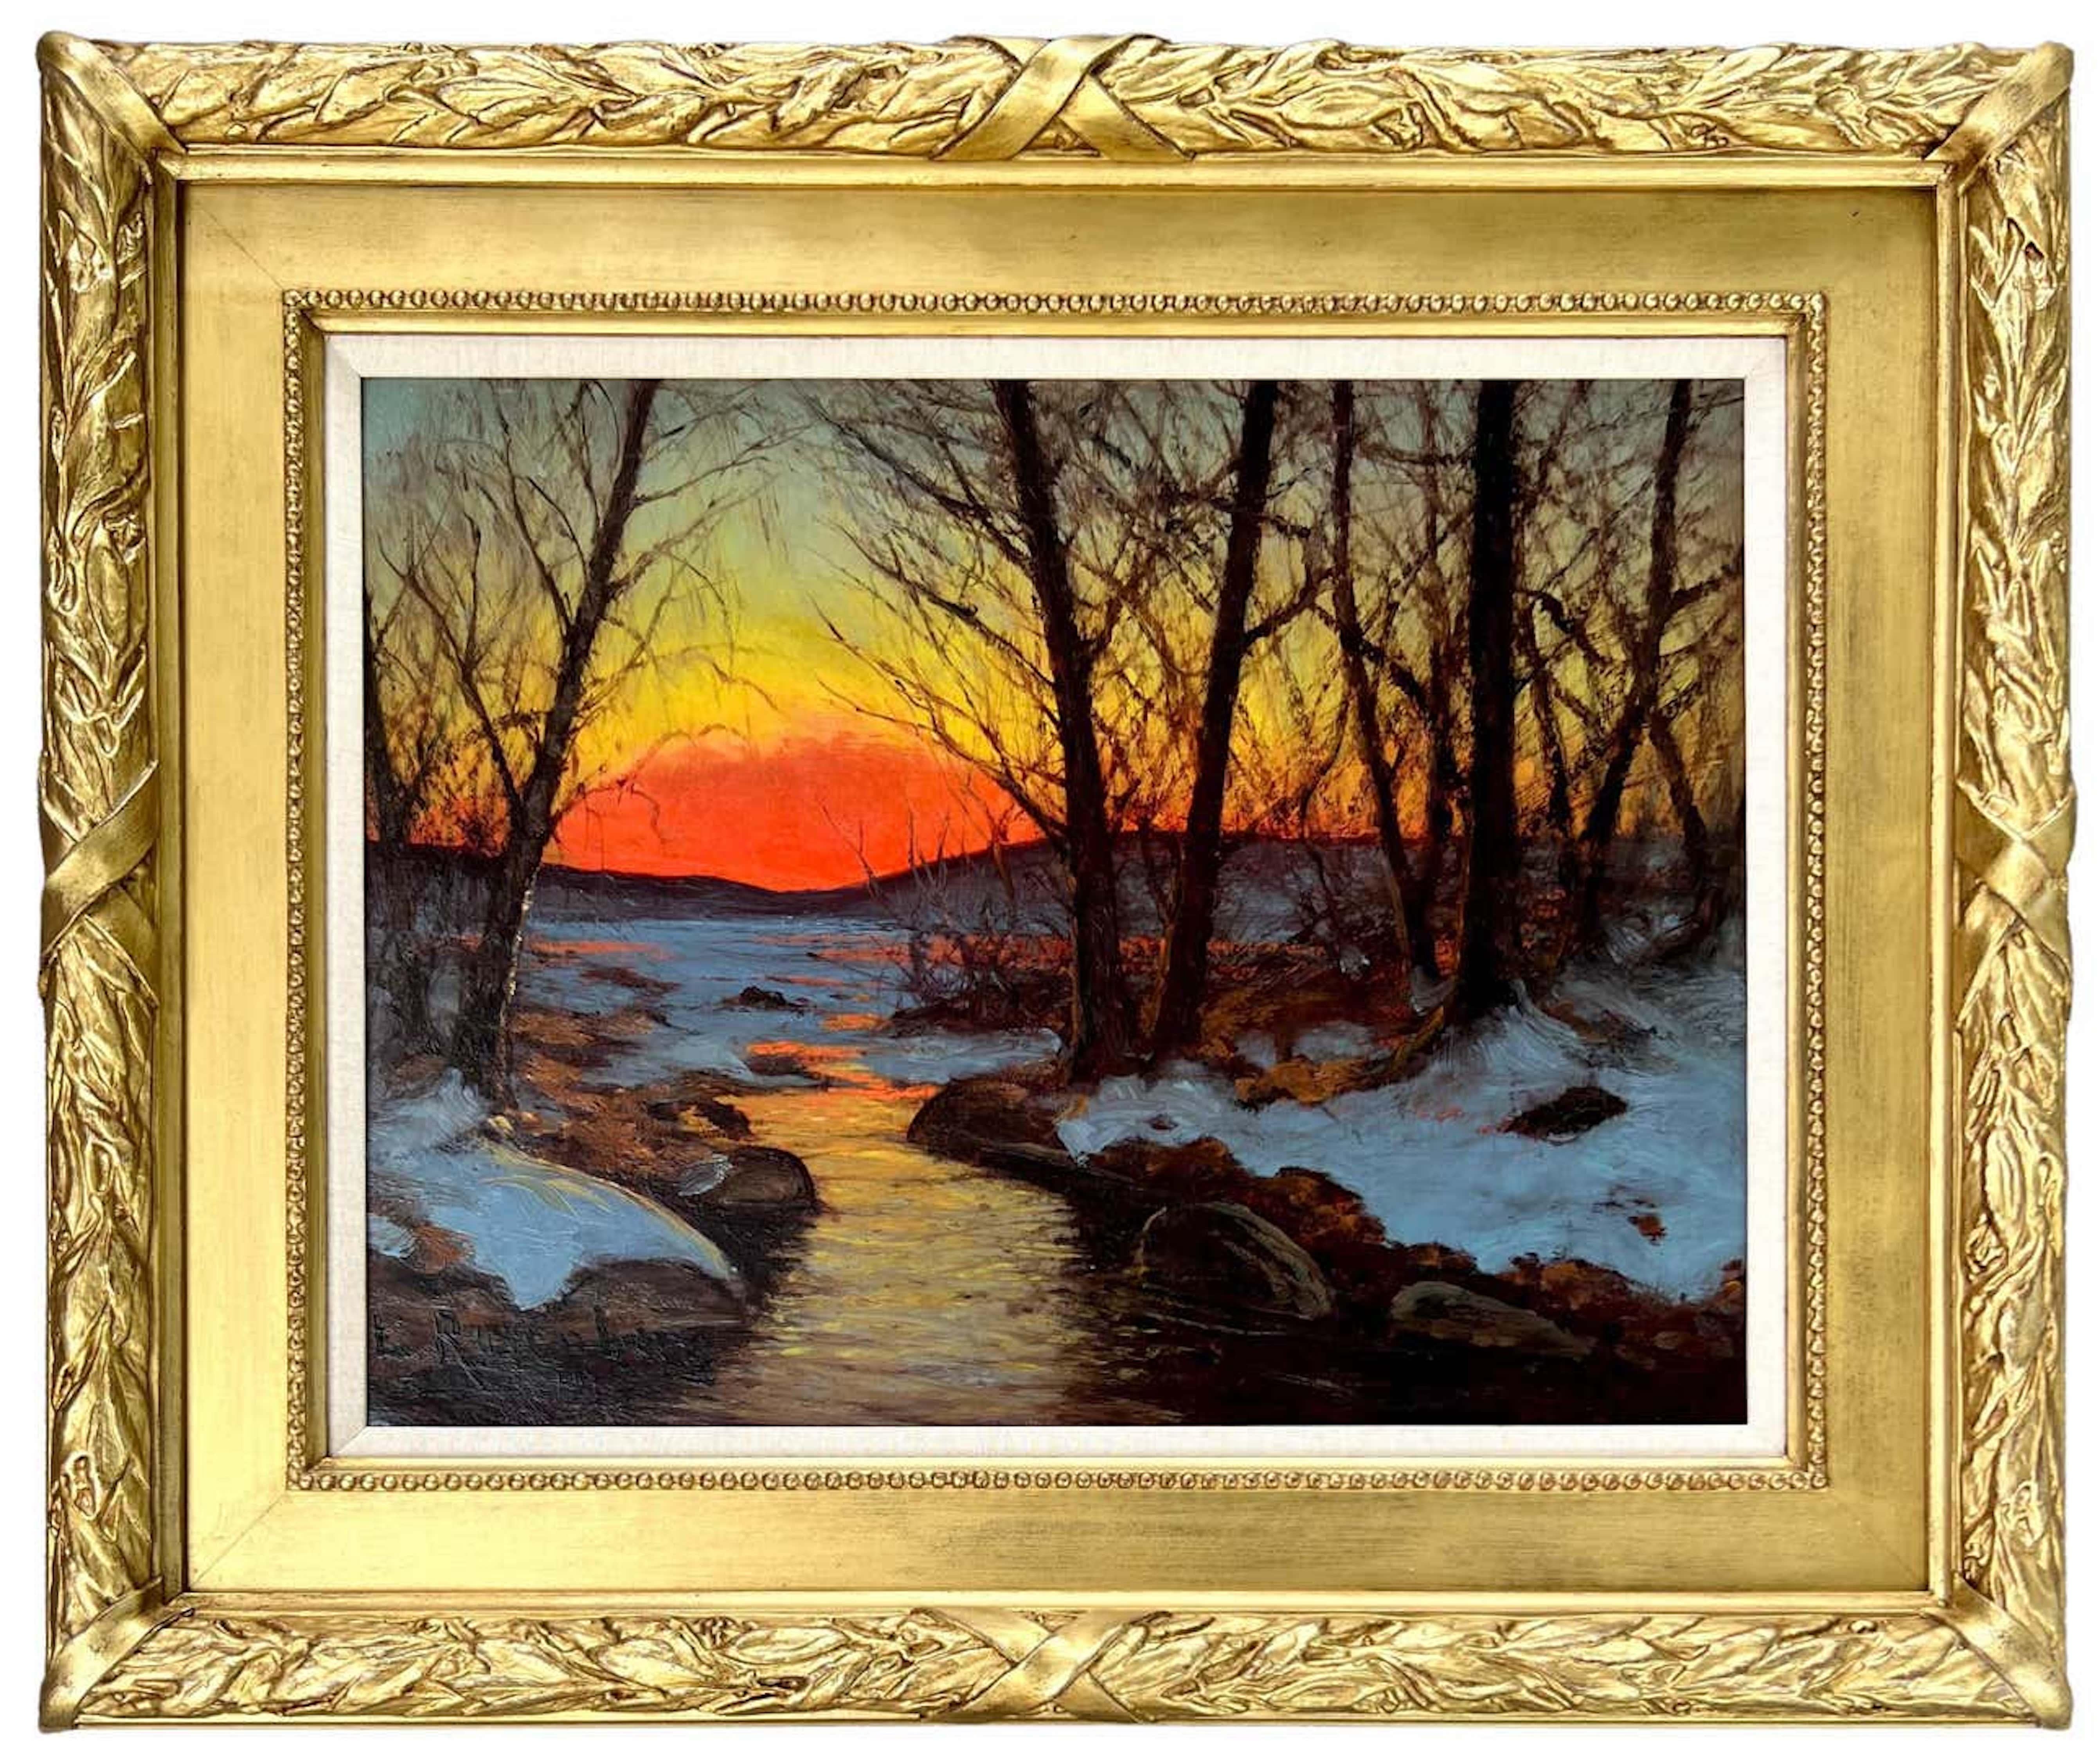 Edvard Rosenberg Landscape Painting - Sunset over the Lake in Winter